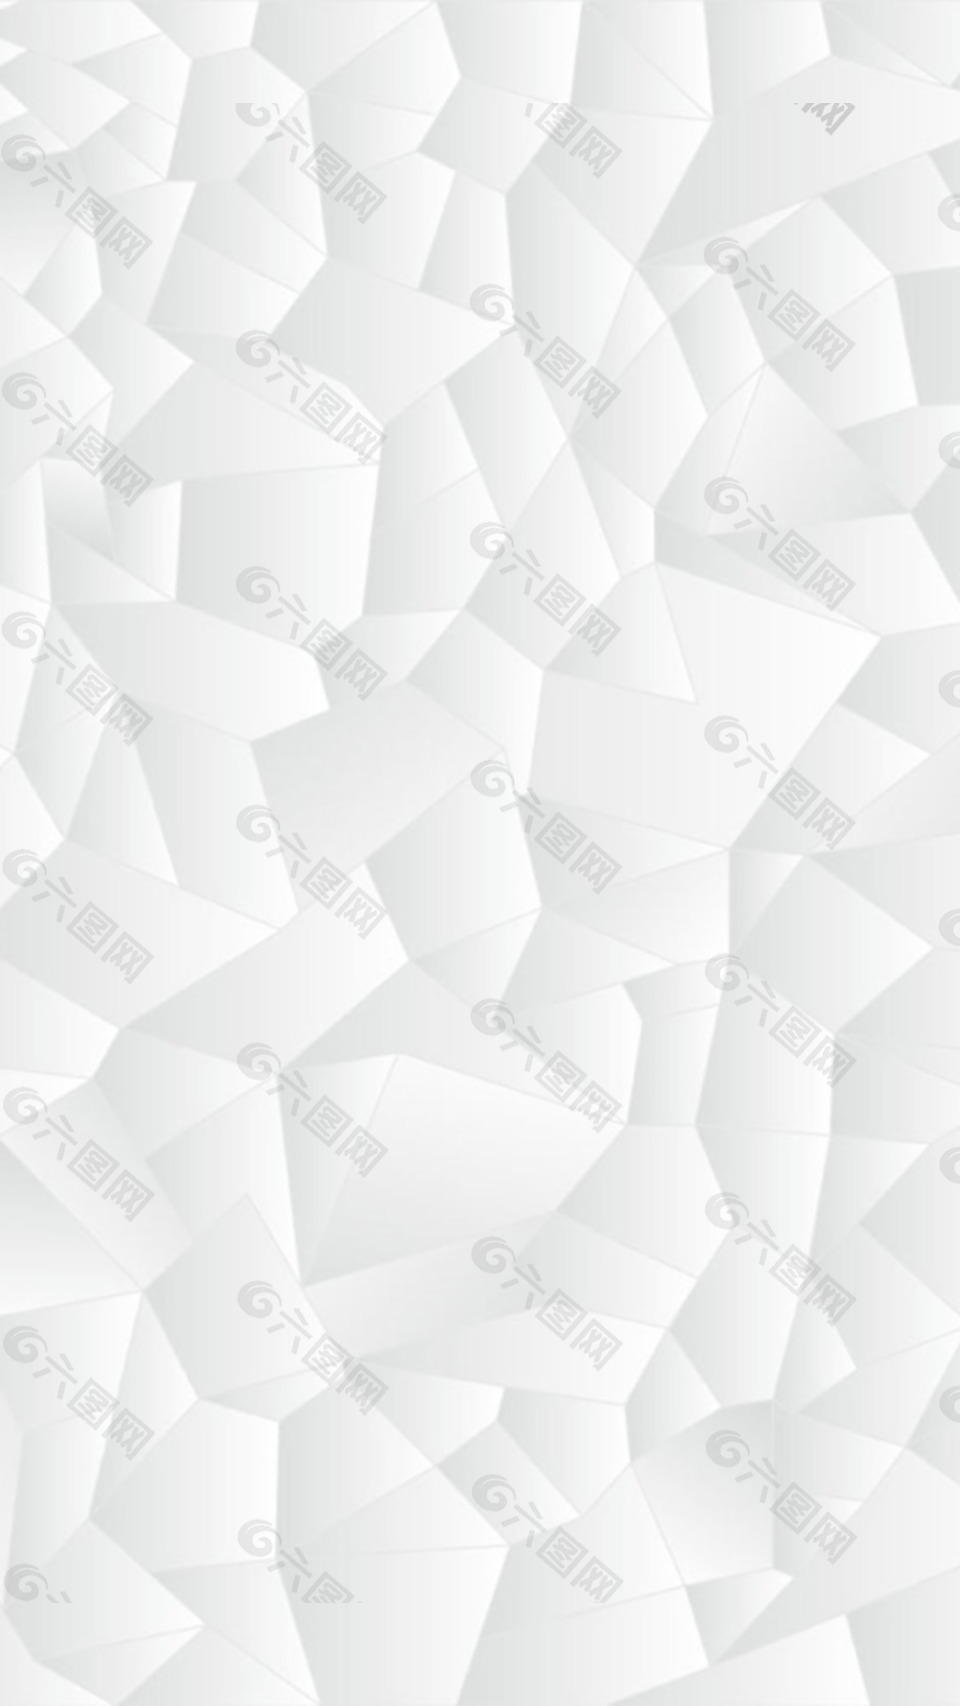 抽象白色方块h5背景素材